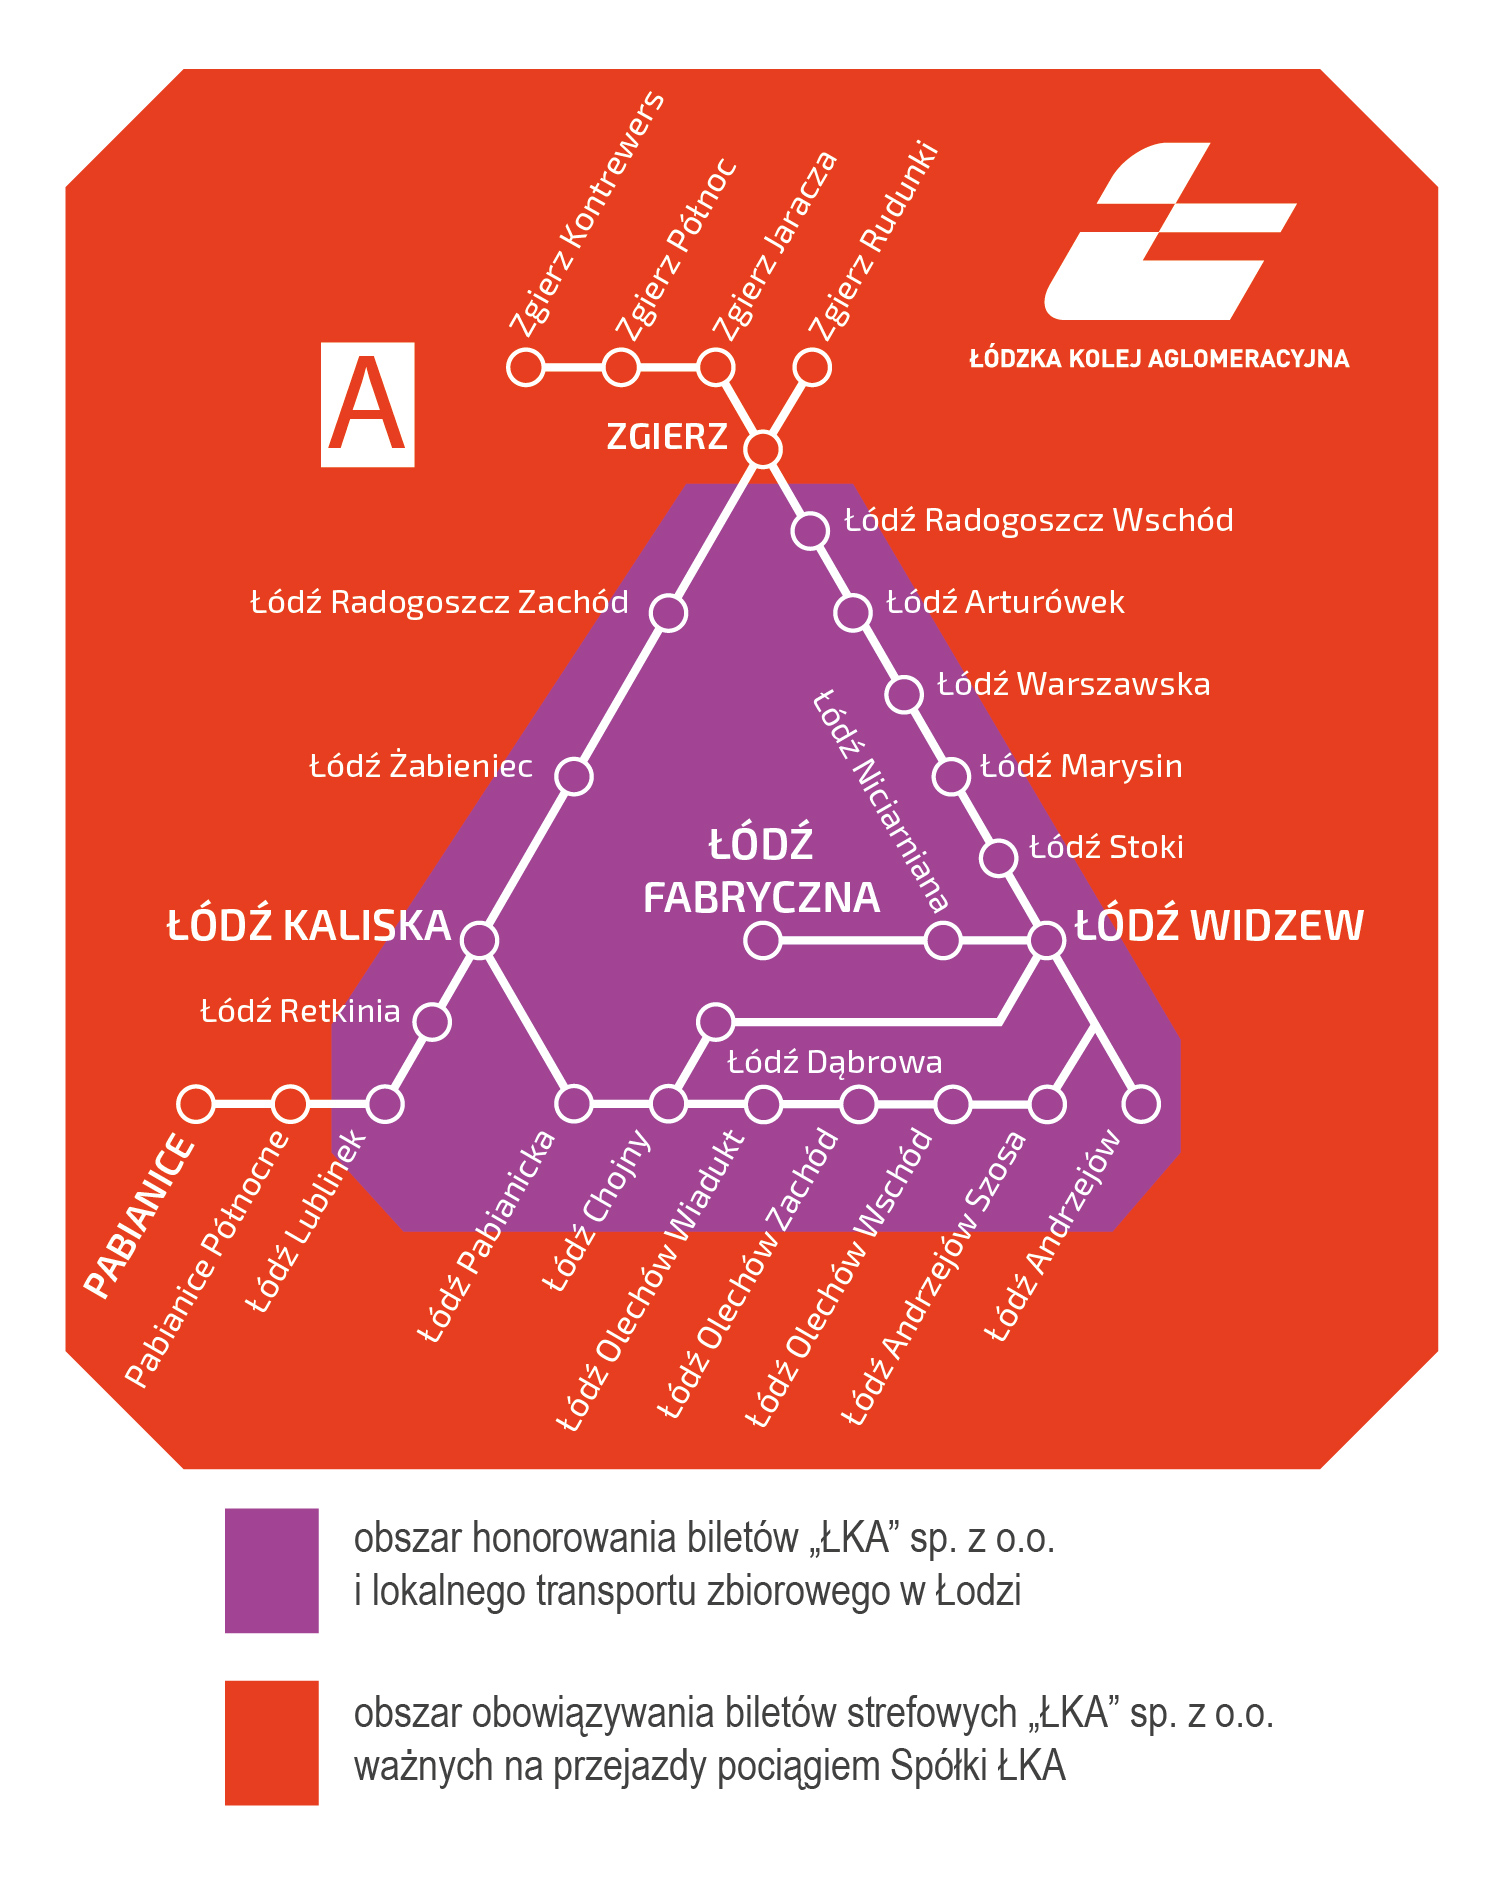 Grafika przedsgtawia schemat stacji wchodzących do Strefy A wg opisu poniżej. 